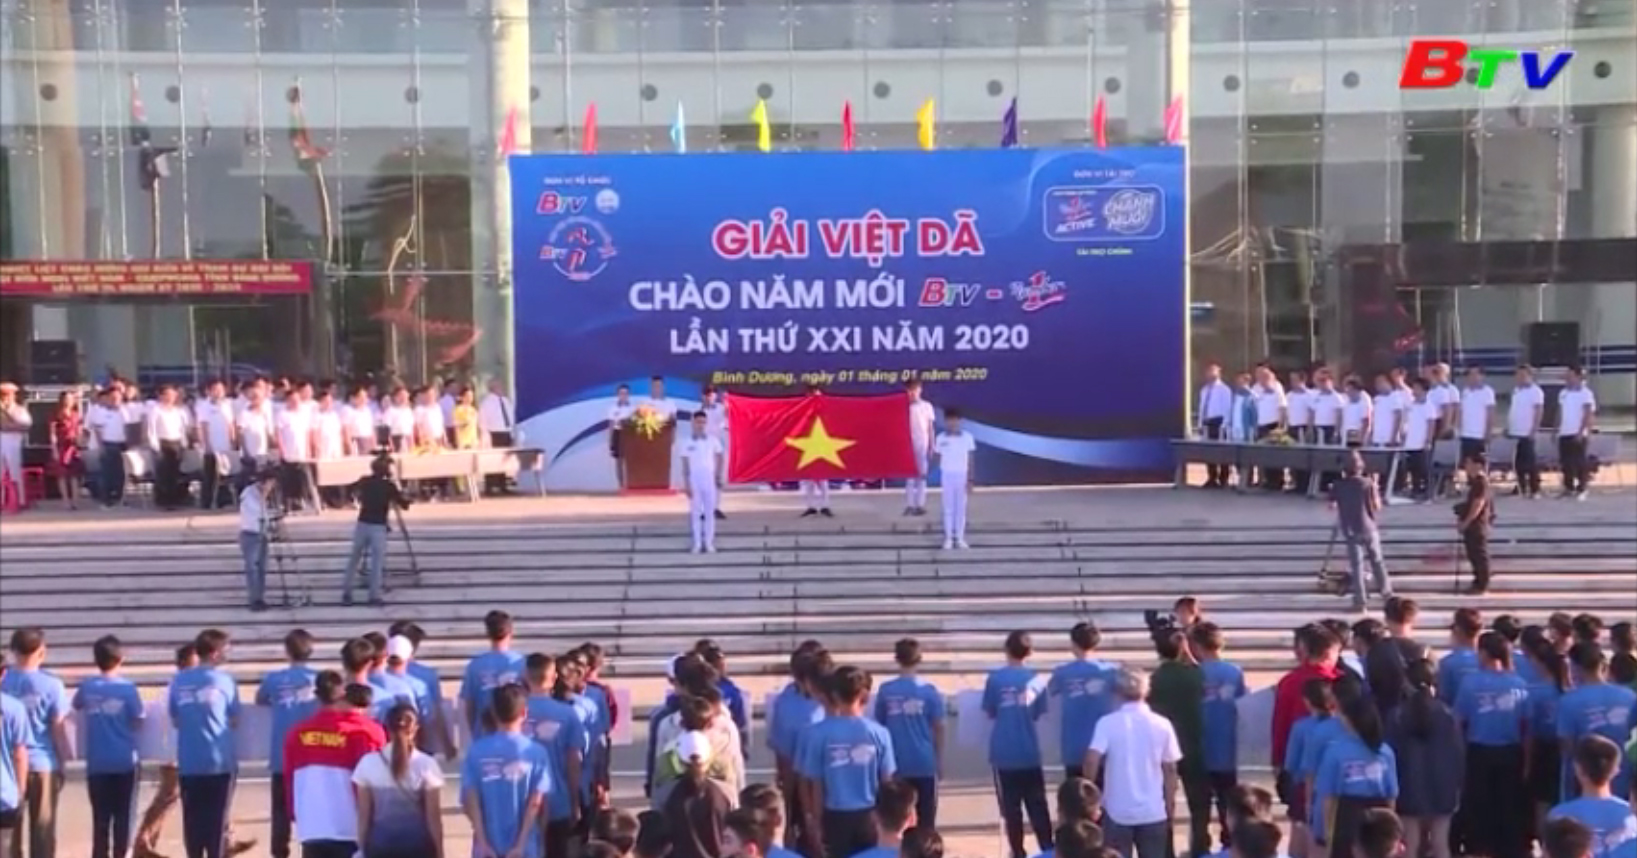 Giải Việt dã Chào năm mới BTV - Number 1 lần thứ XXI năm 2020